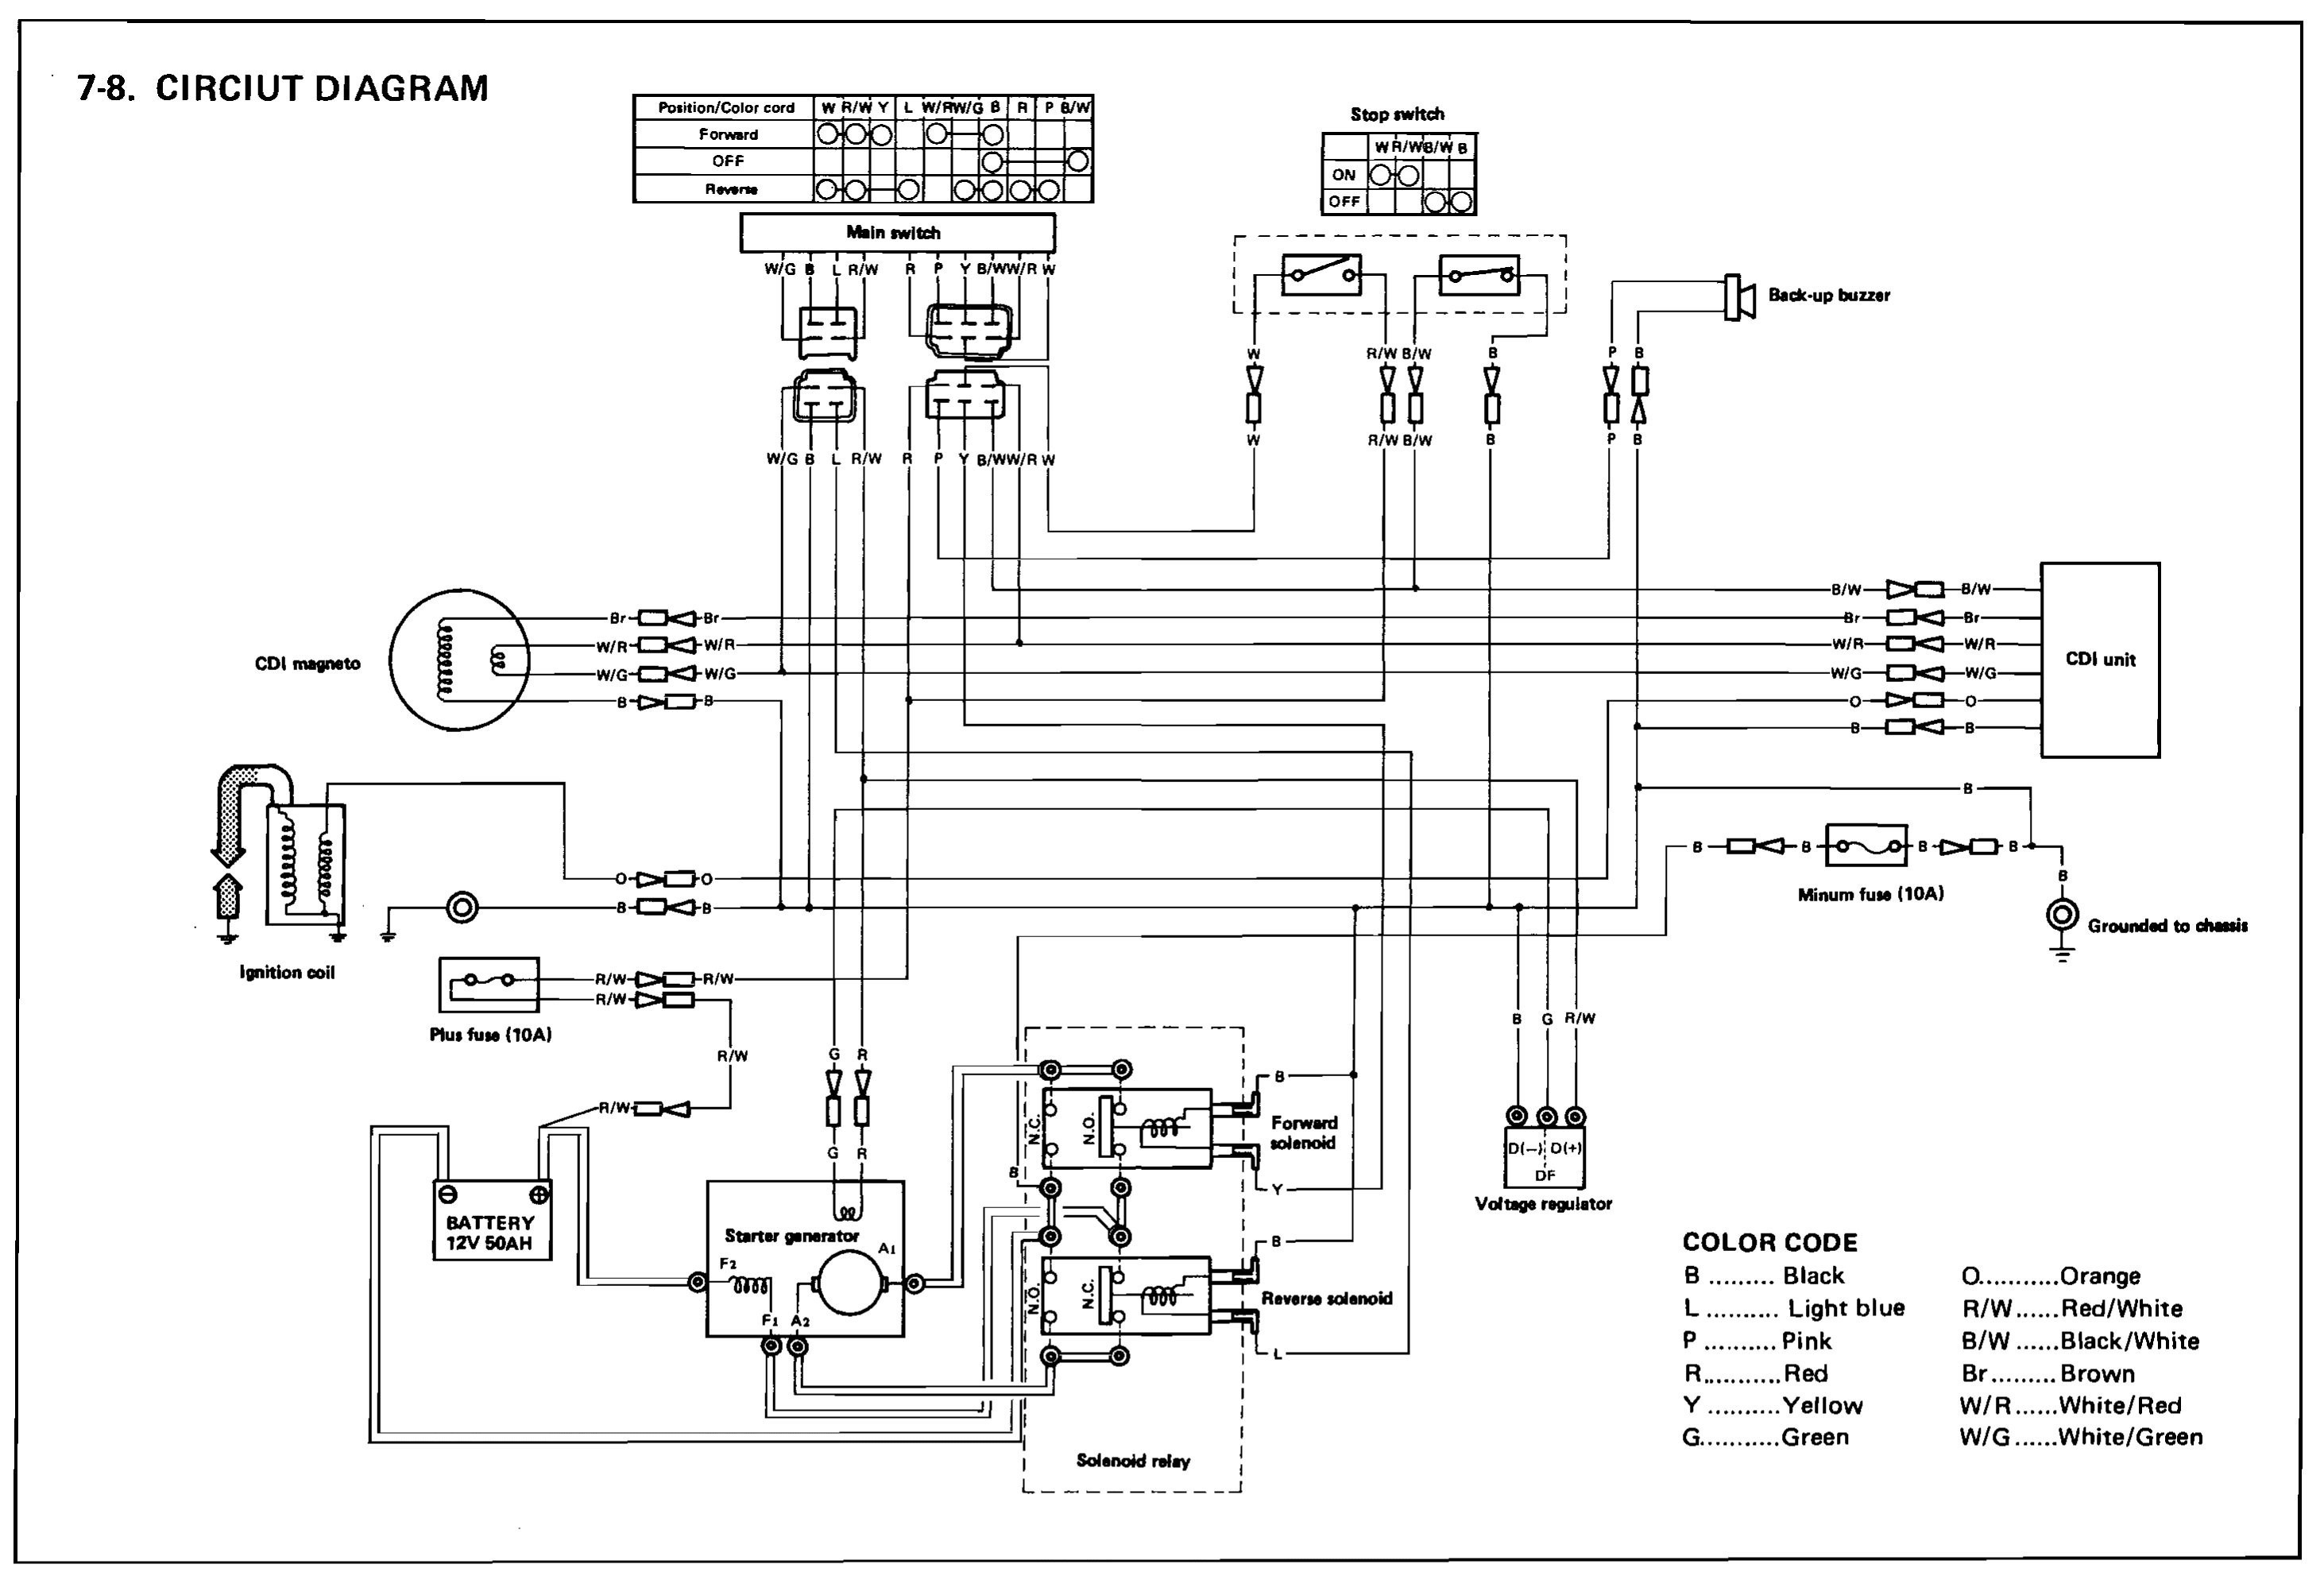 Club Car Wiring Diagram 48 Volt 2004 Gem Car Wiring Diagram Wiring Diagram Go Of Club Car Wiring Diagram 48 Volt